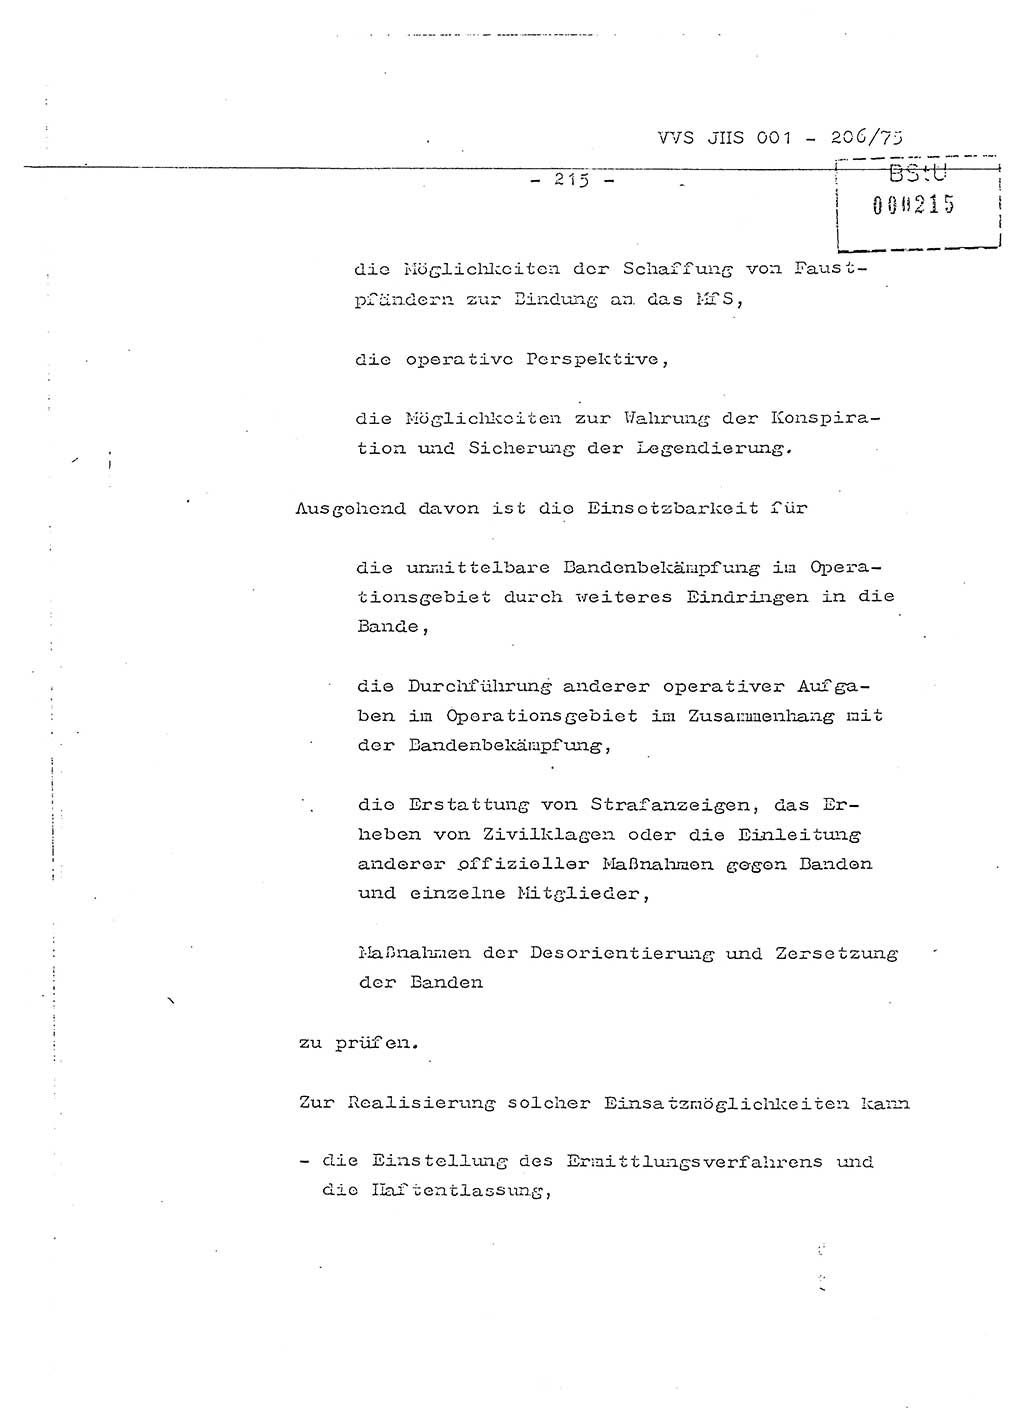 Dissertation Generalmajor Manfred Hummitzsch (Leiter der BV Leipzig), Generalmajor Heinz Fiedler (HA Ⅵ), Oberst Rolf Fister (HA Ⅸ), Ministerium für Staatssicherheit (MfS) [Deutsche Demokratische Republik (DDR)], Juristische Hochschule (JHS), Vertrauliche Verschlußsache (VVS) 001-206/75, Potsdam 1975, Seite 215 (Diss. MfS DDR JHS VVS 001-206/75 1975, S. 215)